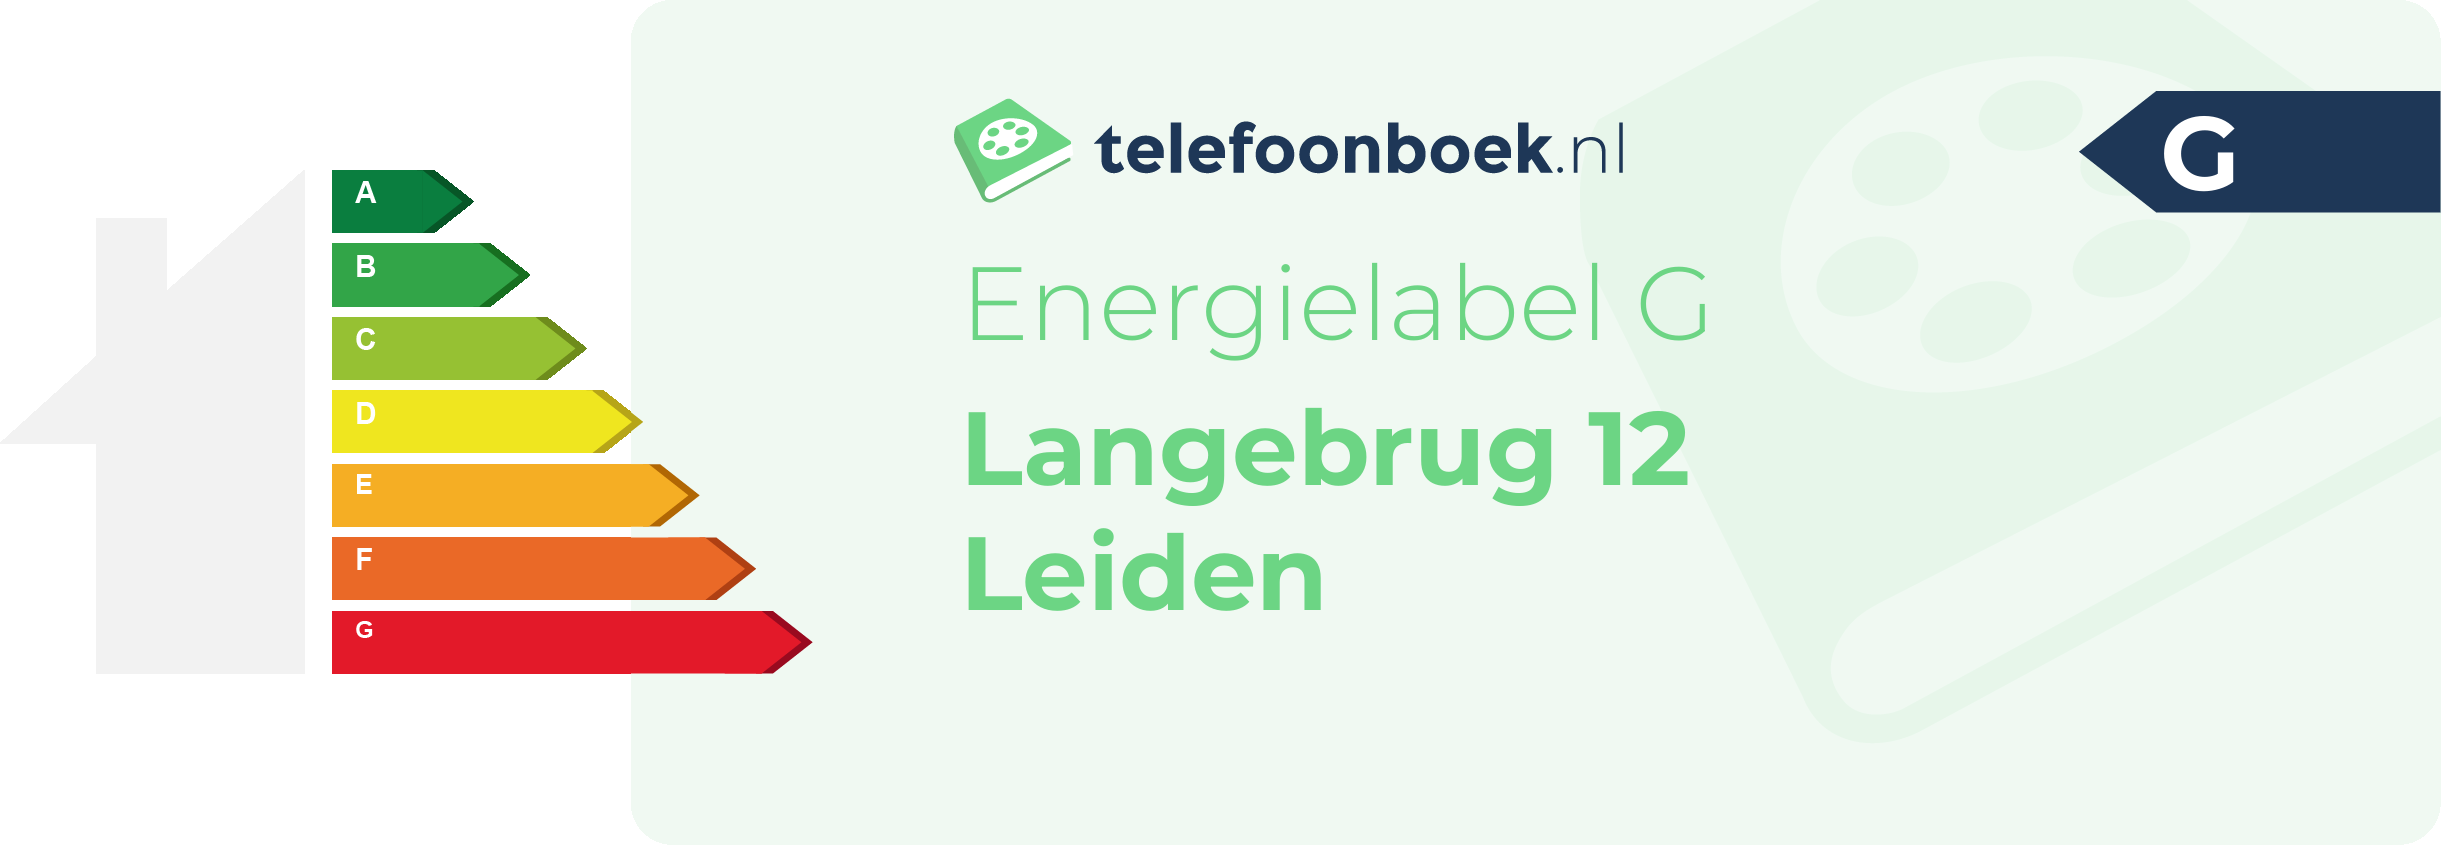 Energielabel Langebrug 12 Leiden